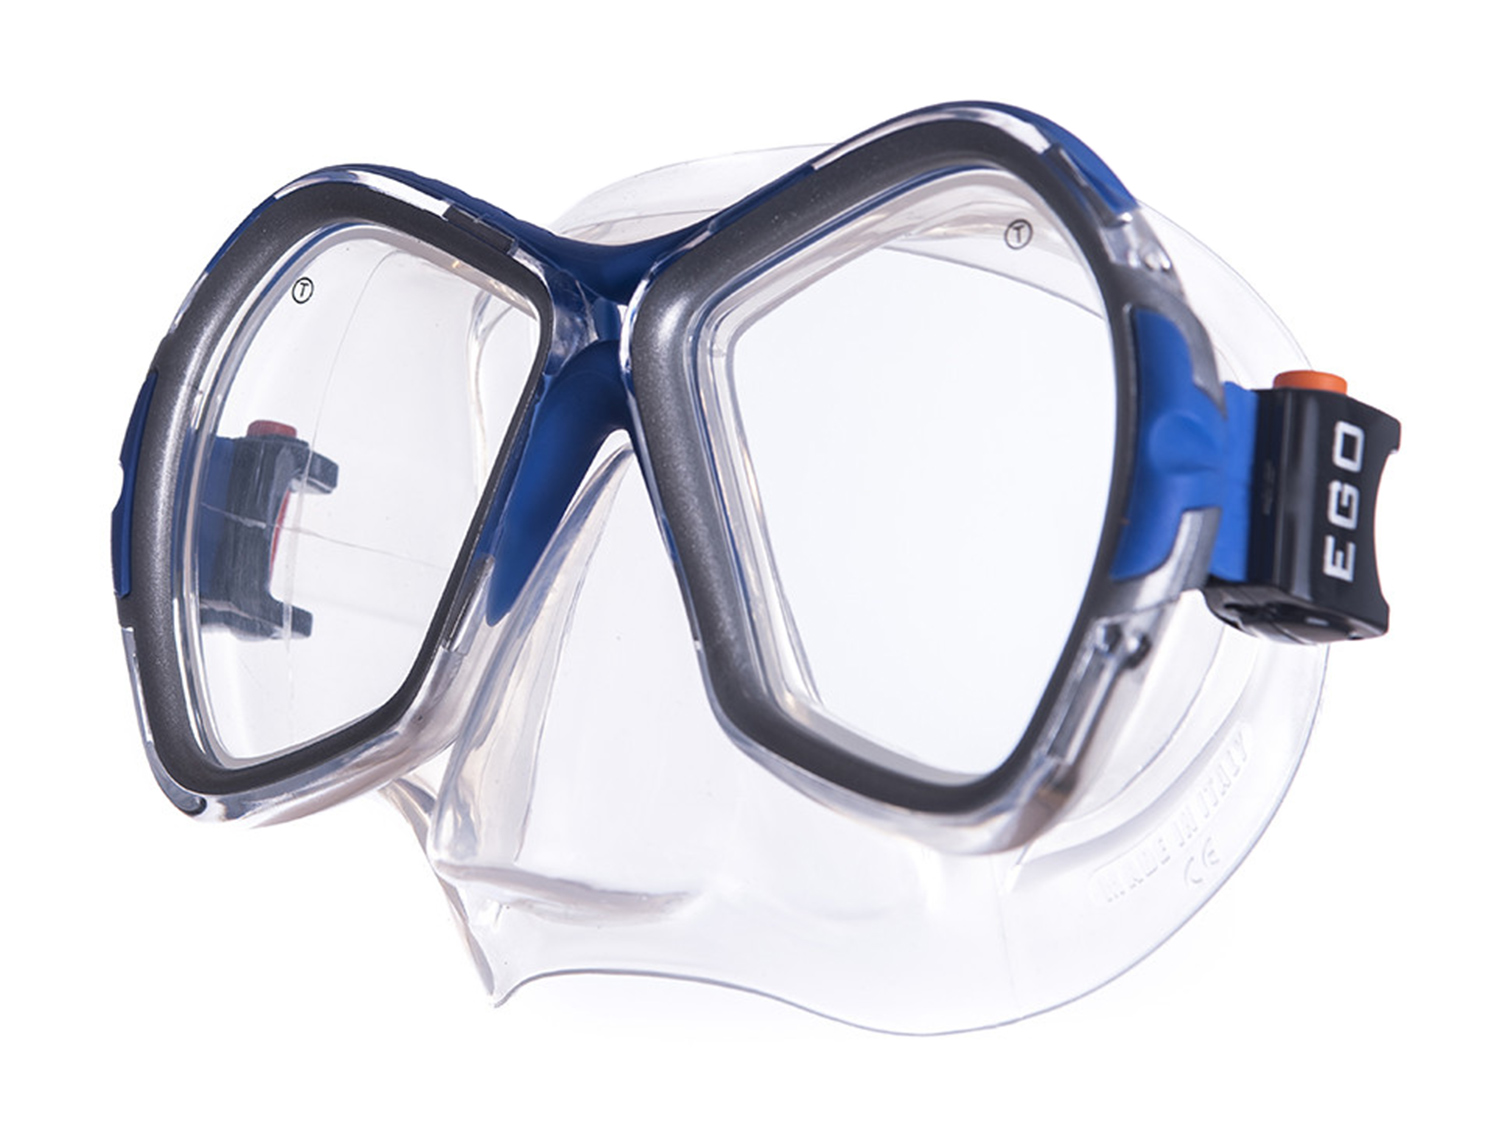 Маска для плавания Salvas Phoenix Mask серебристая/синяя - купить в Москве, цены на Мегамаркет | 100028986876